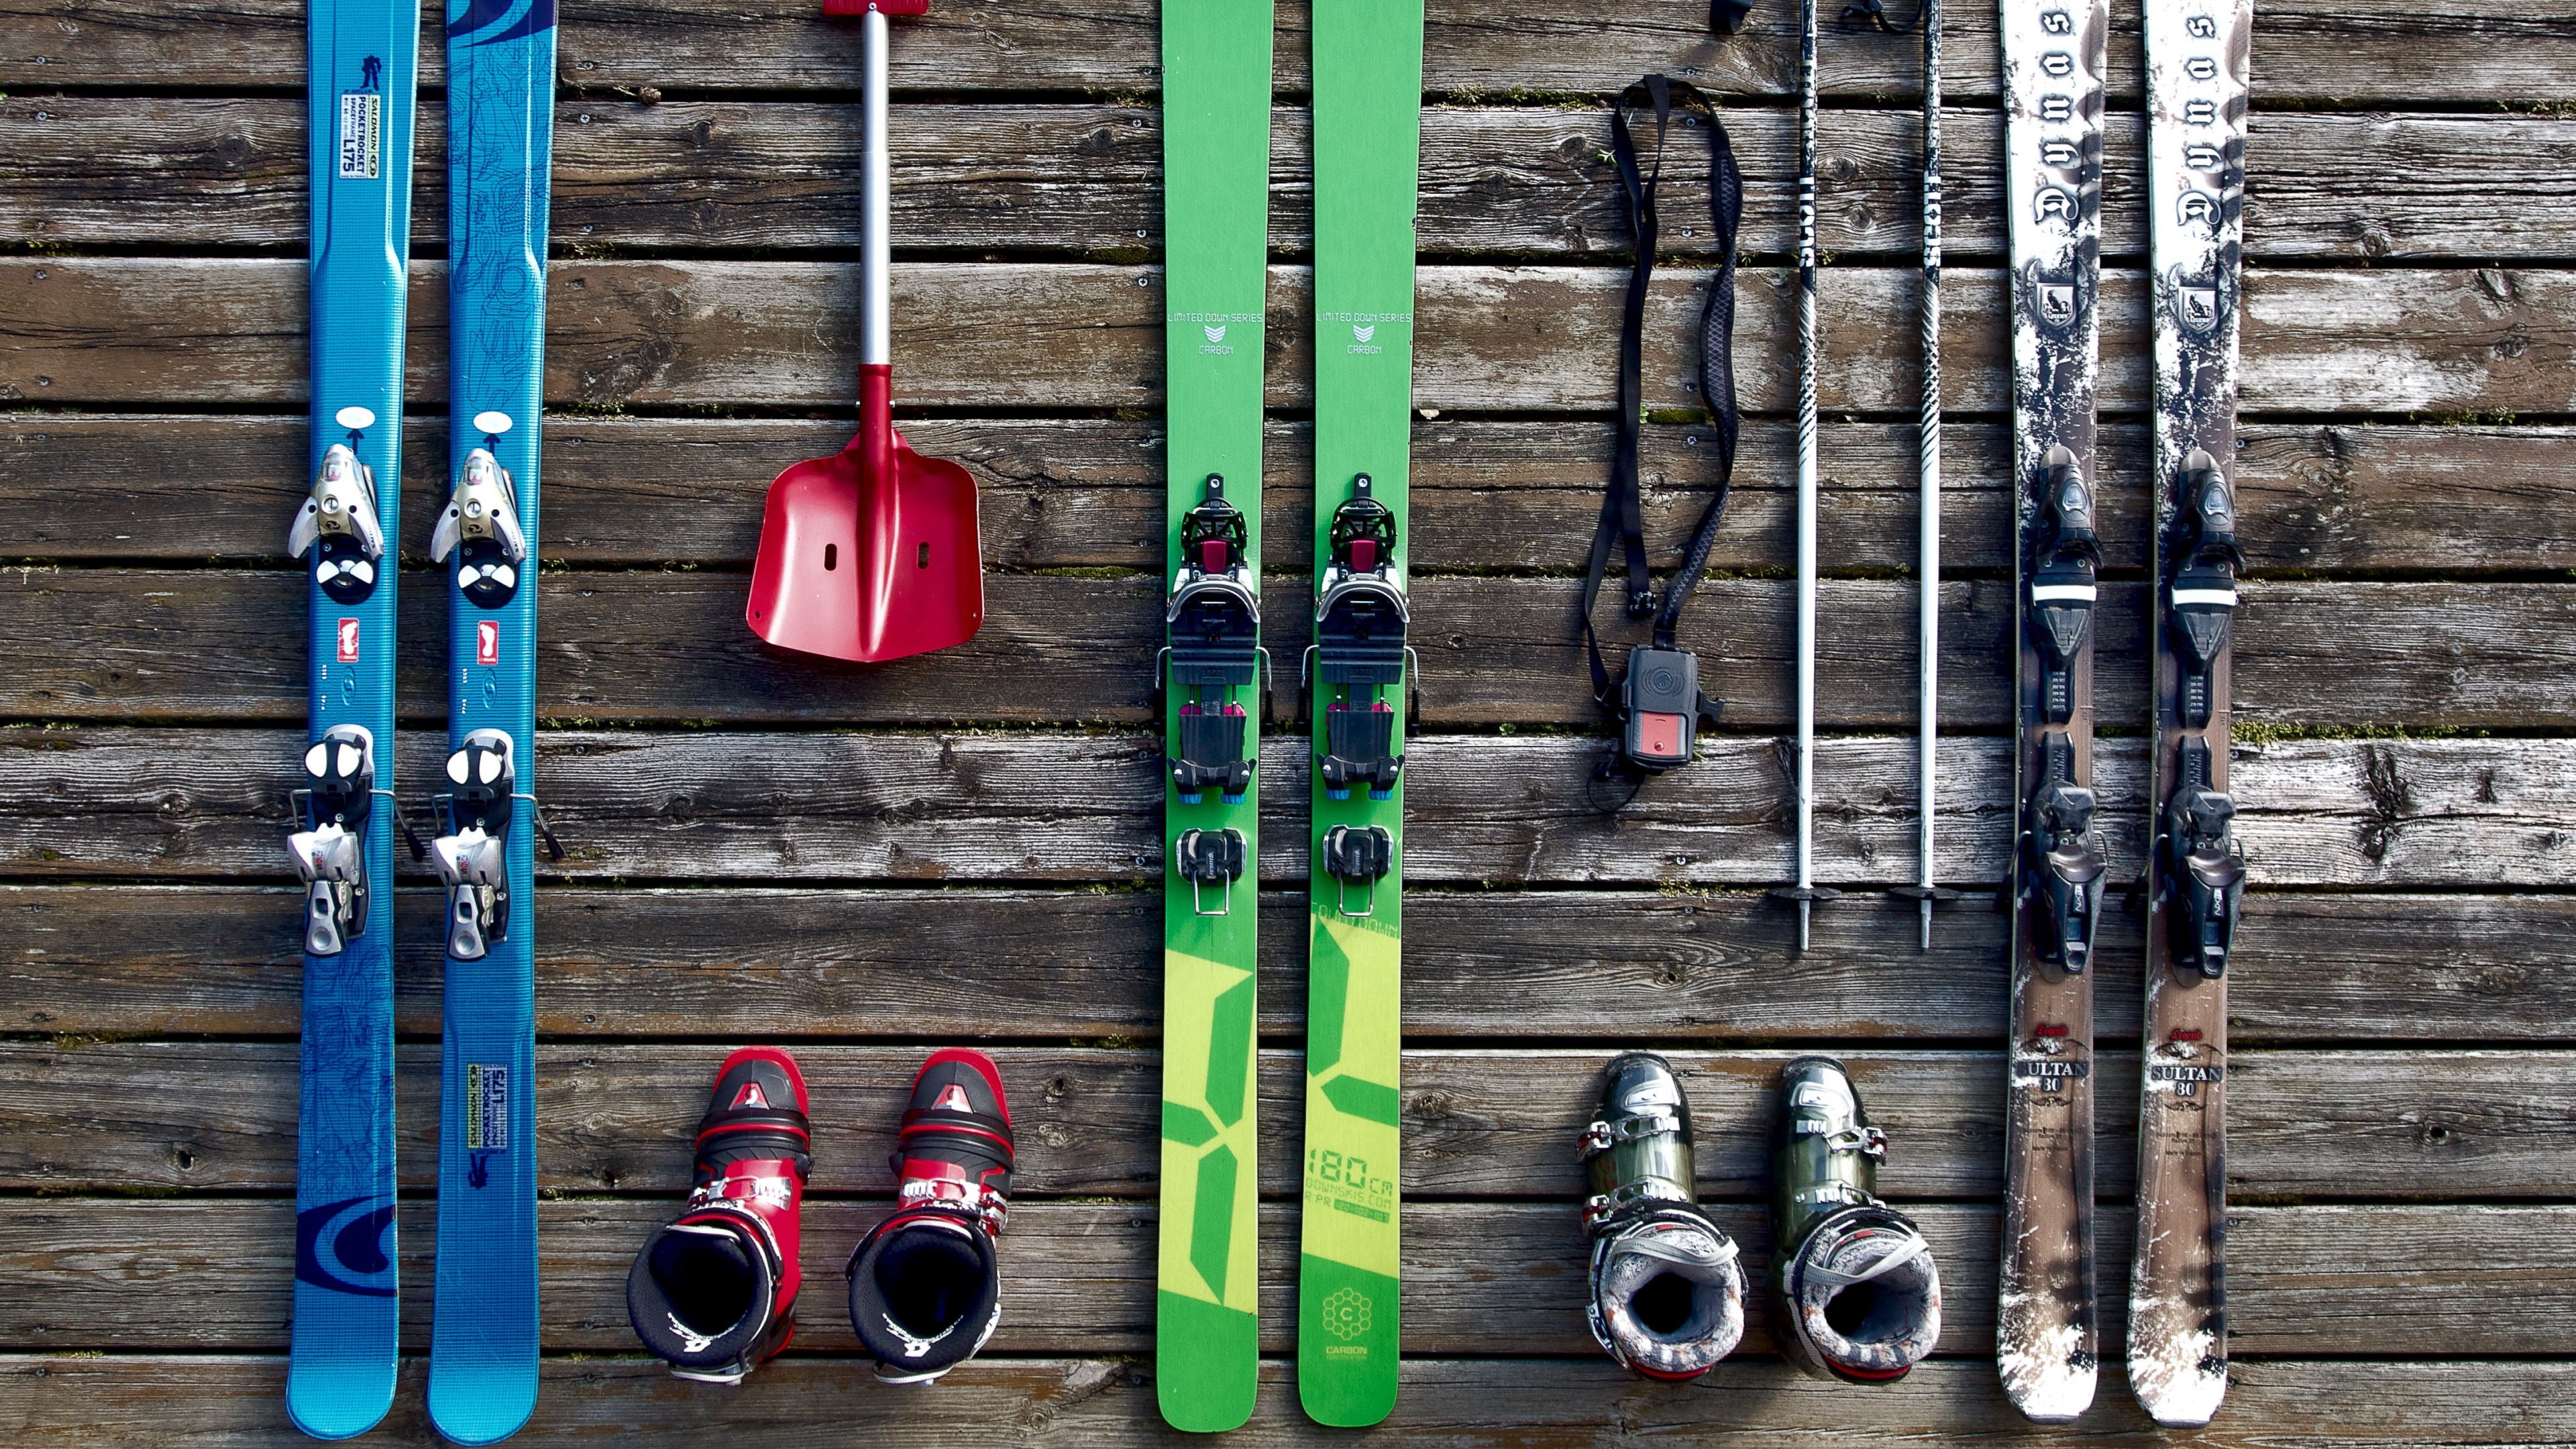 滑雪板, 滑板滑雪, 色彩, 木, 艺术 壁纸 3840x2160 允许